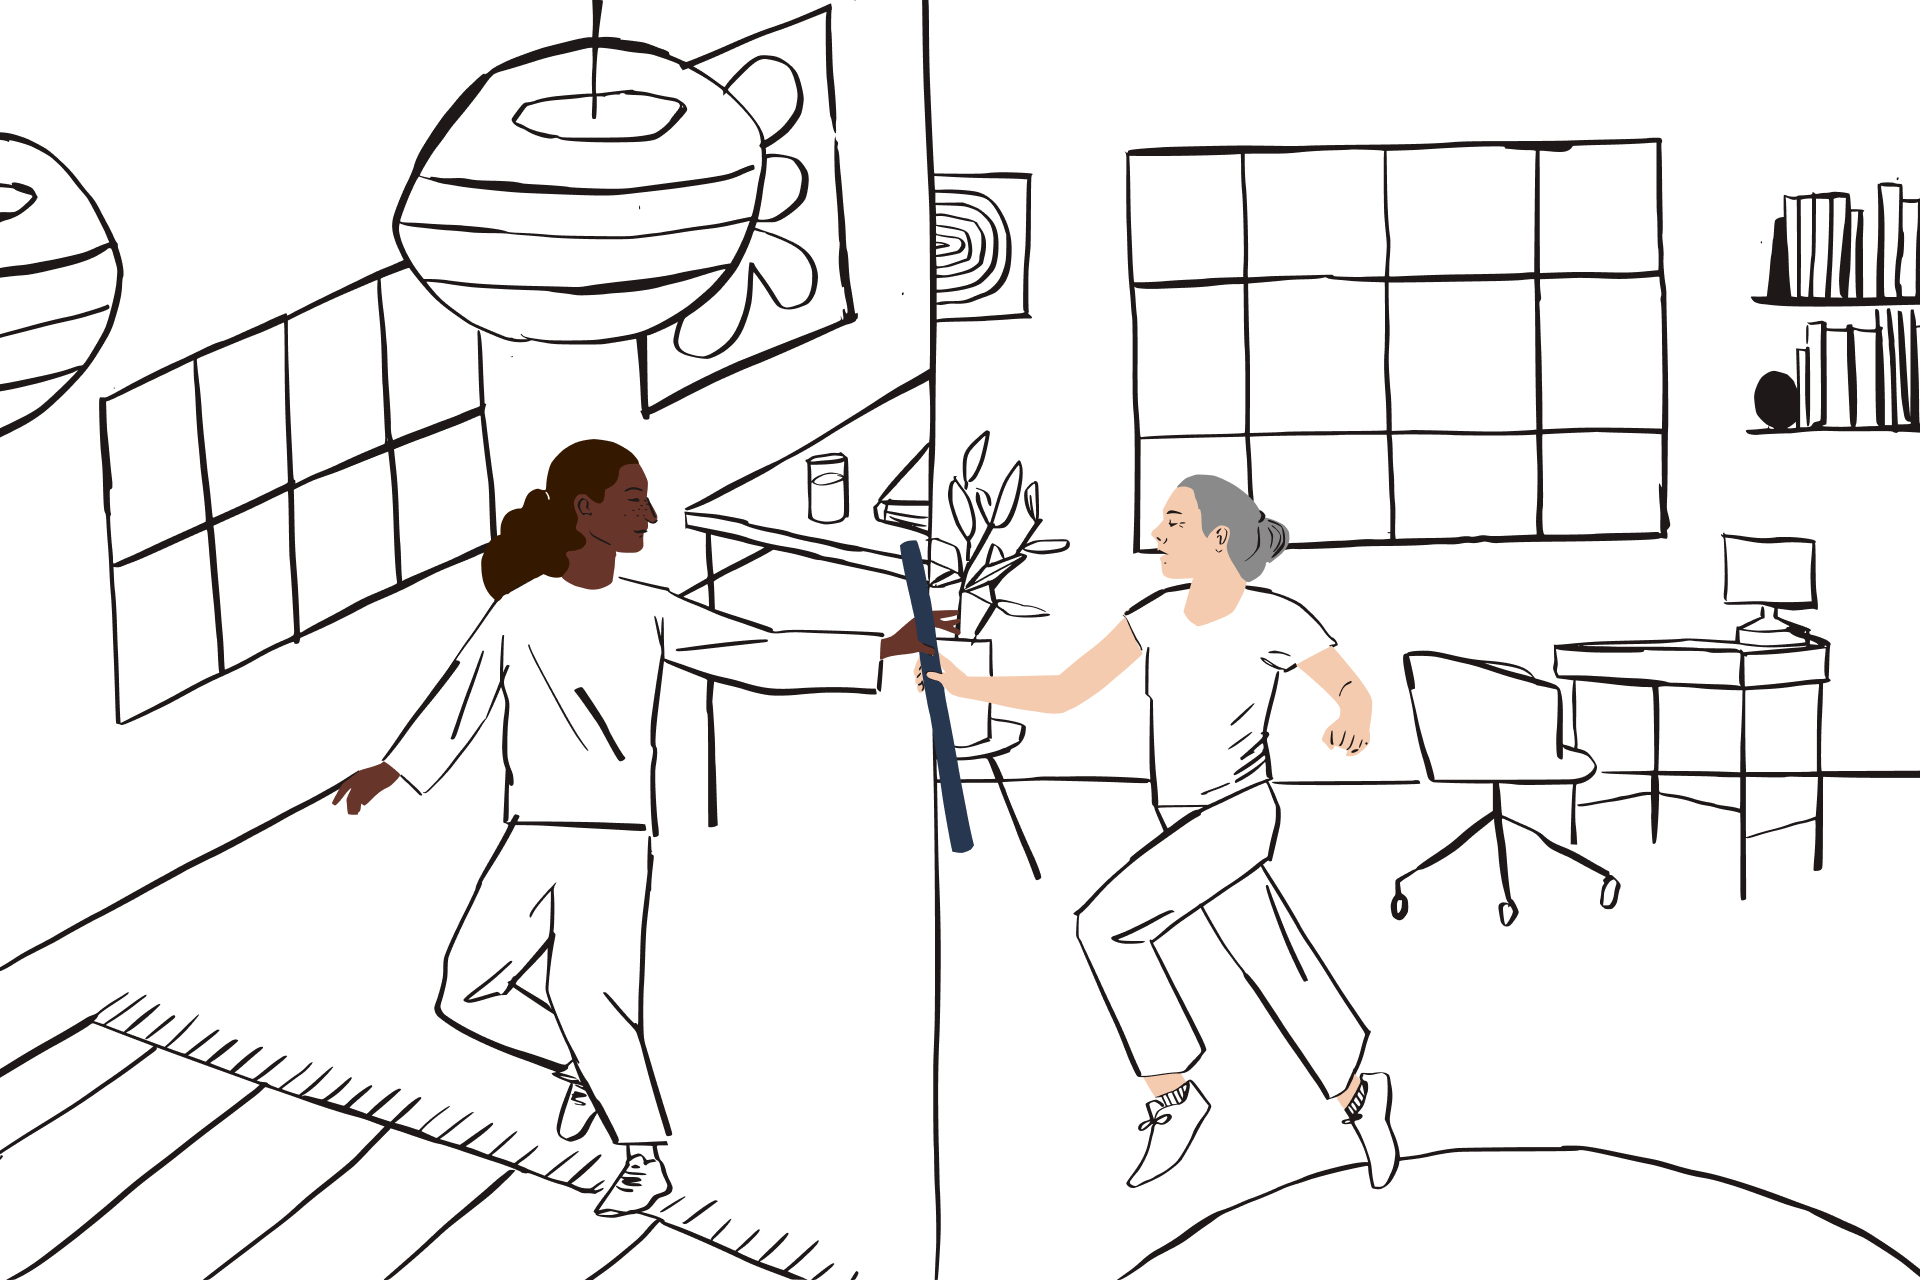 Ilustración con arte lineal de una persona pasando un testigo desde una oficina en casa a otra persona que está en un espacio distinto.